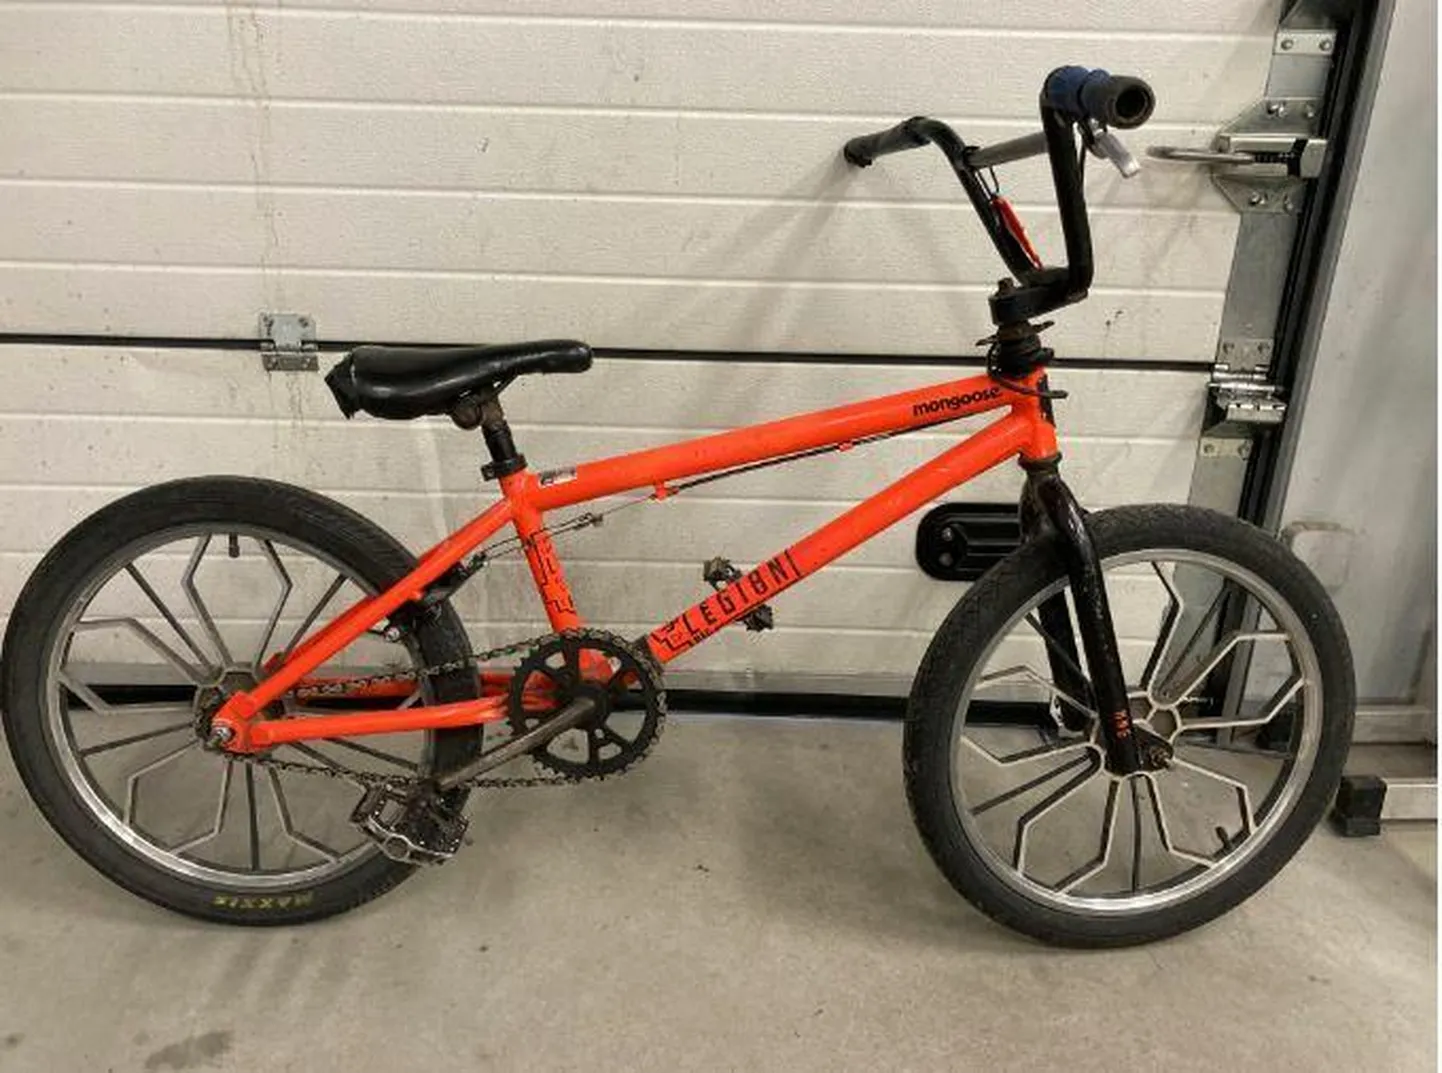 Ehkki jalgrattaid varastatakse, neid ka leitakse. Sellist jalgratast pakutakse praegu Rakvere politseijaoskonnas.